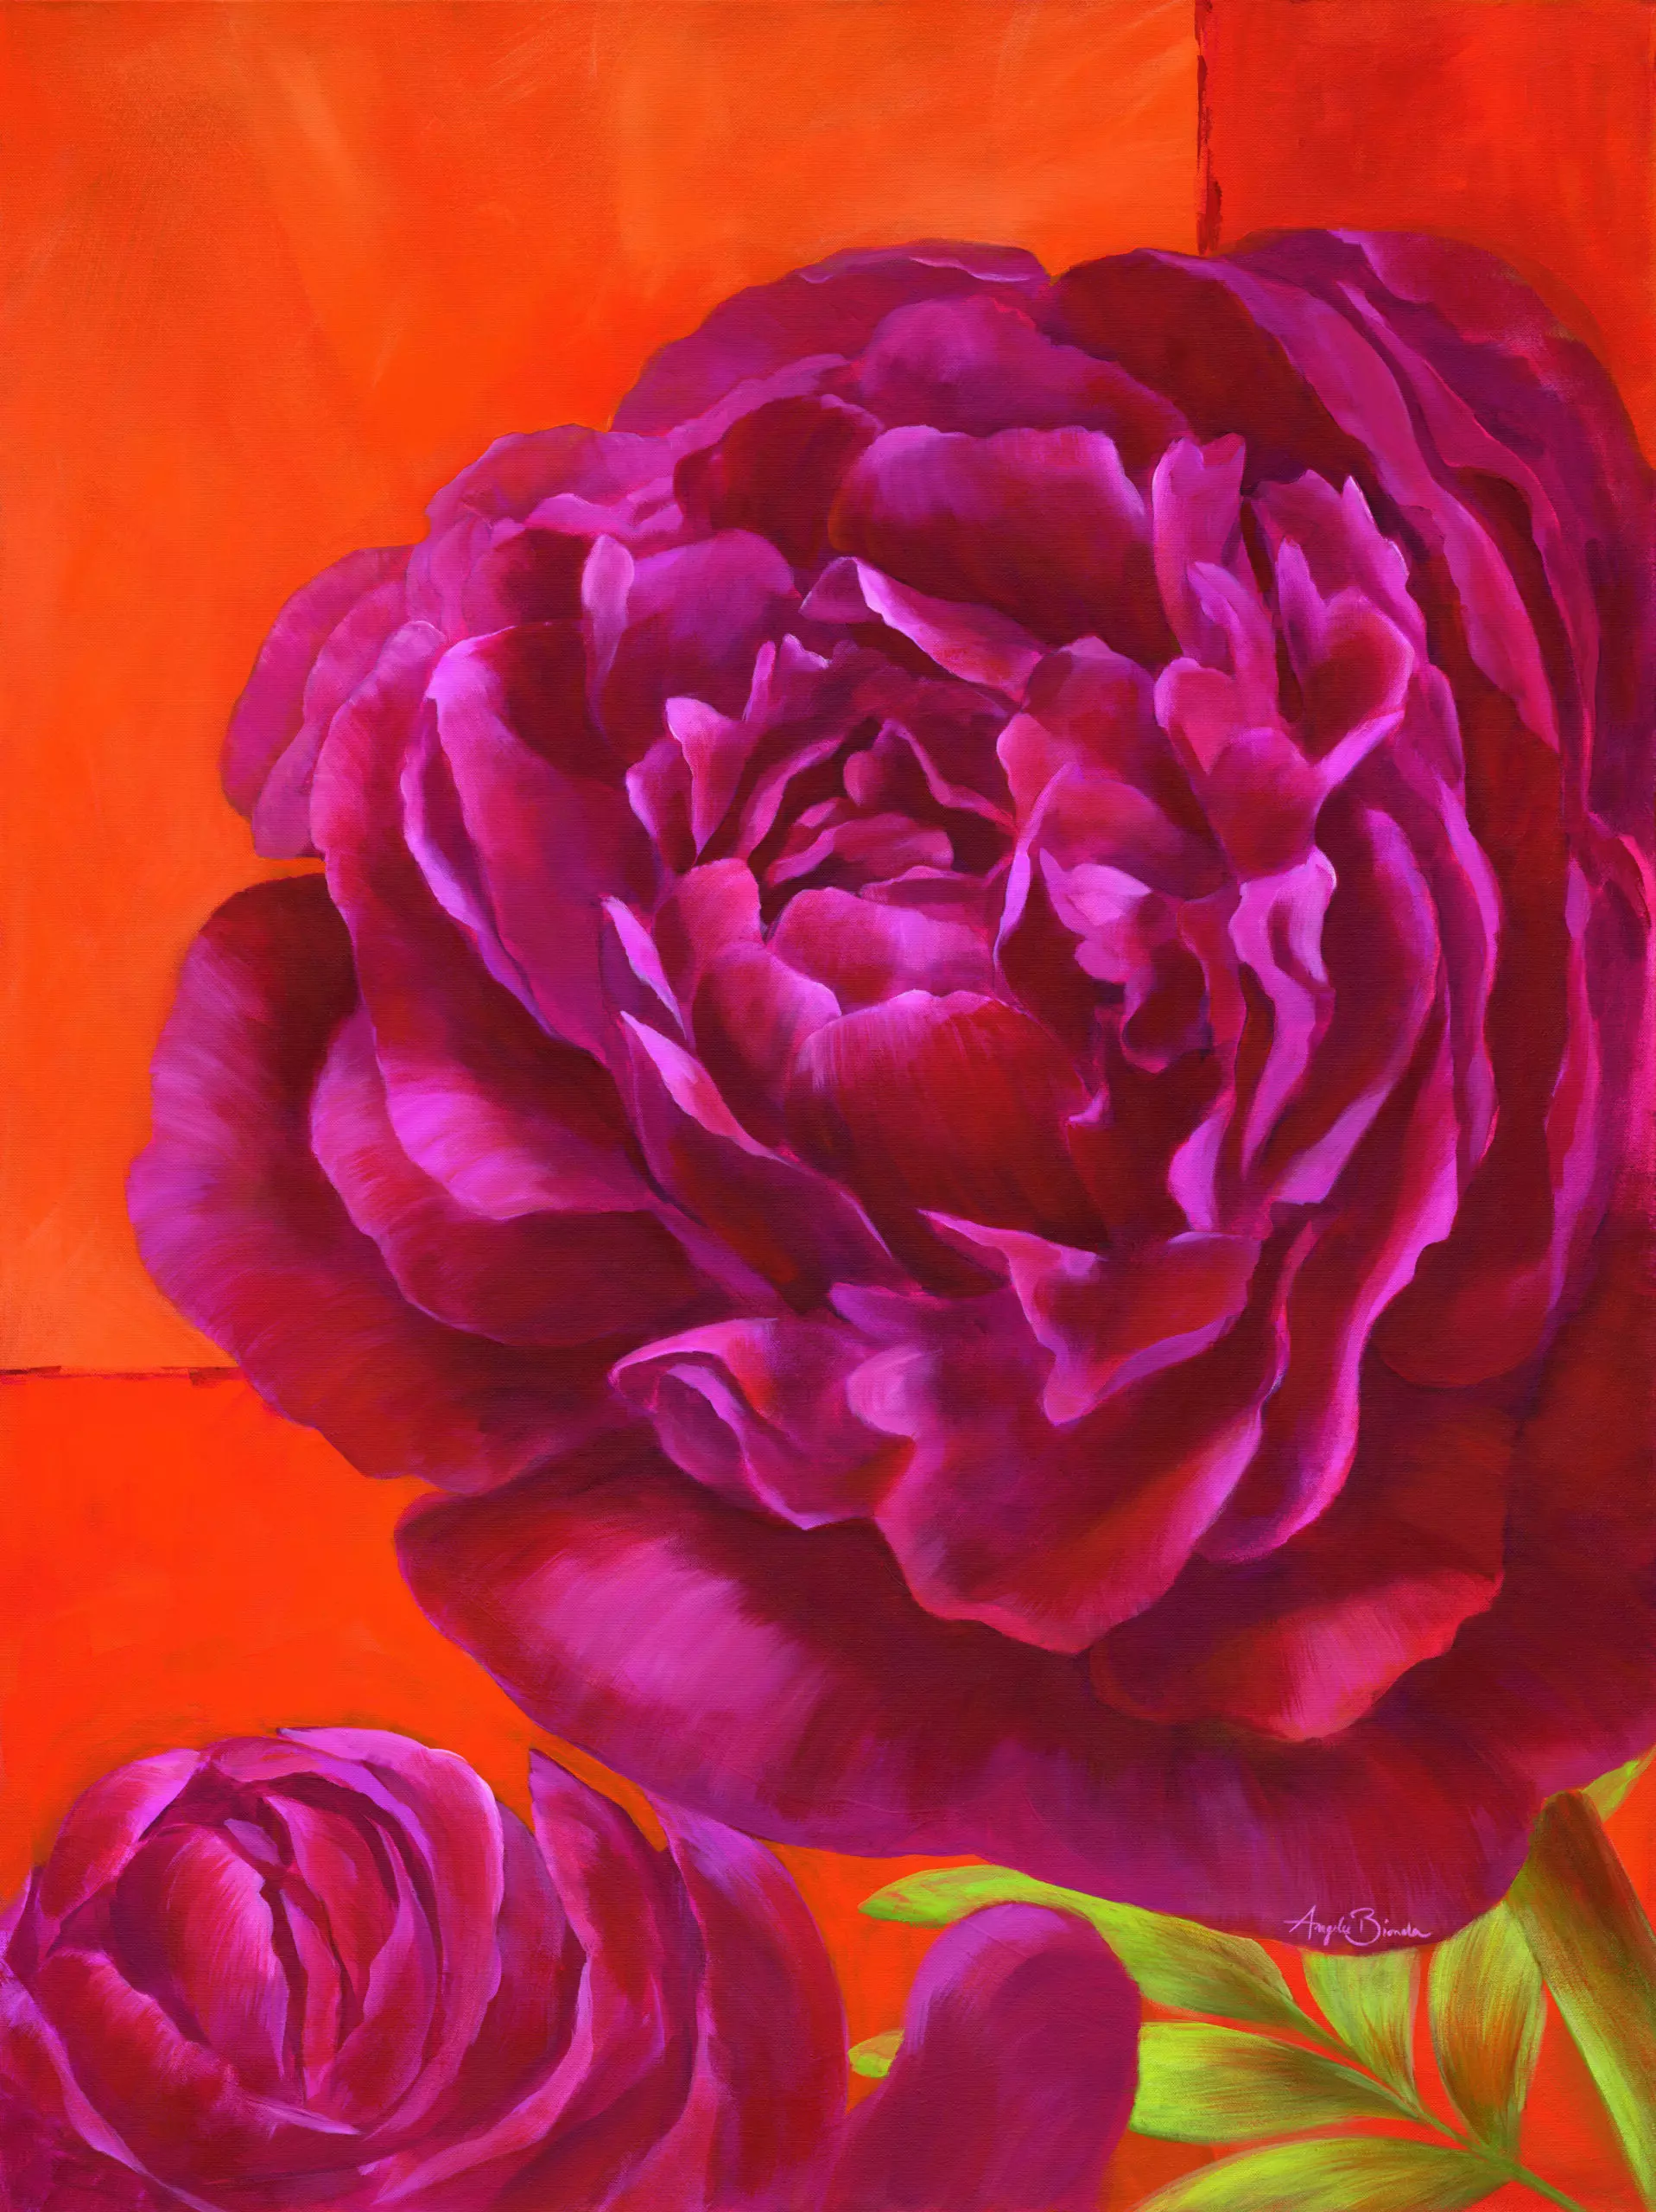 Wandbild (5012) Purple Peony präsentiert: Stillleben,Kreatives,Details und Strukturen,Natur,Blumen und Blüten,Makro,Floral,Modern